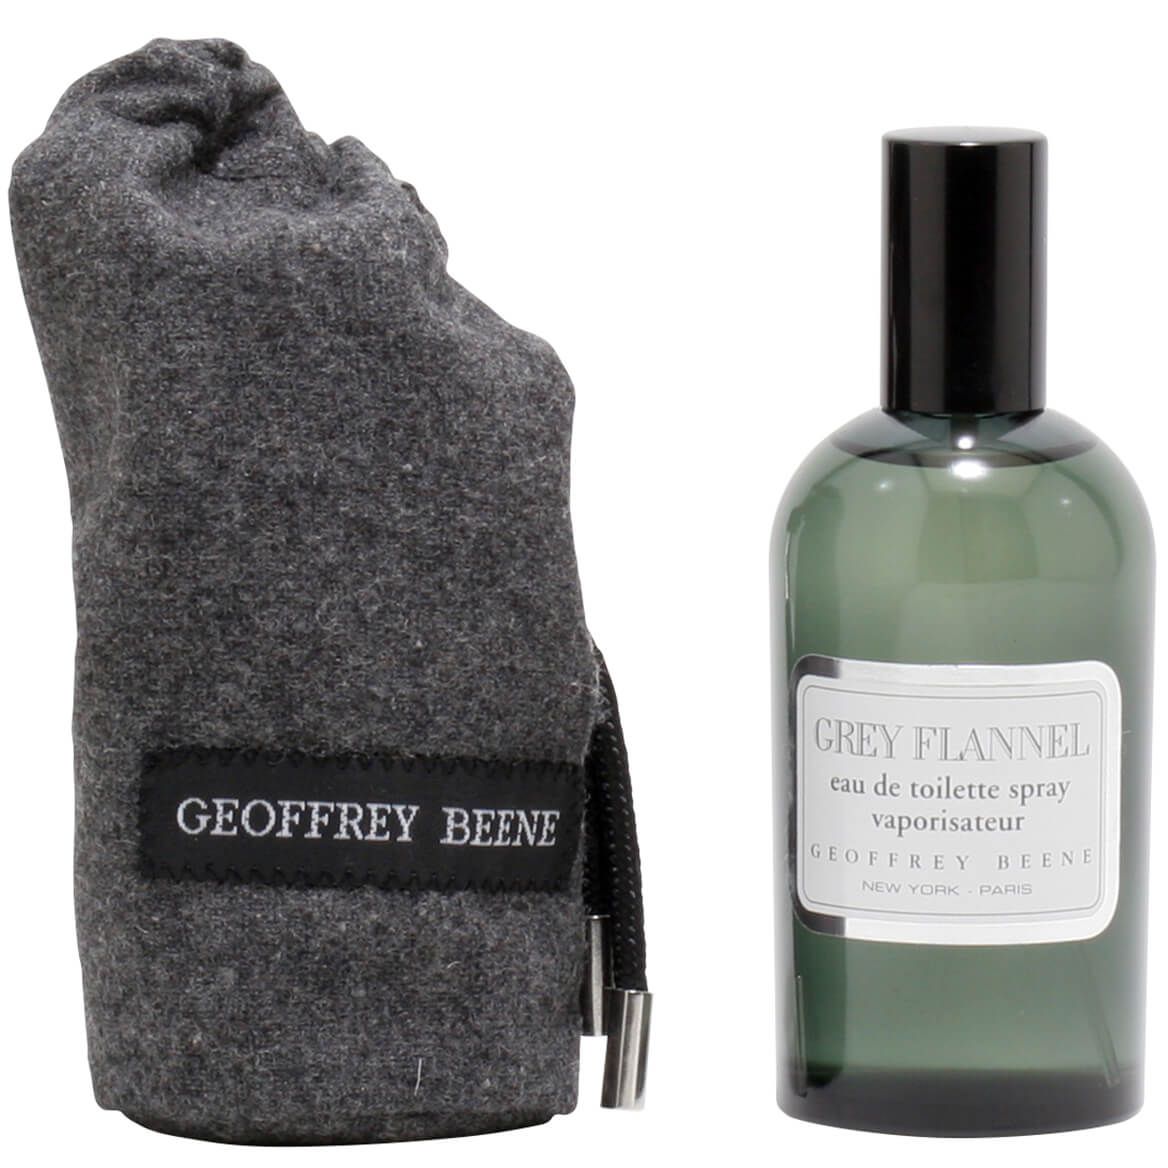 Geoffrey Beene Grey Flannel for Men EDT, 4 oz. + '-' + 366843